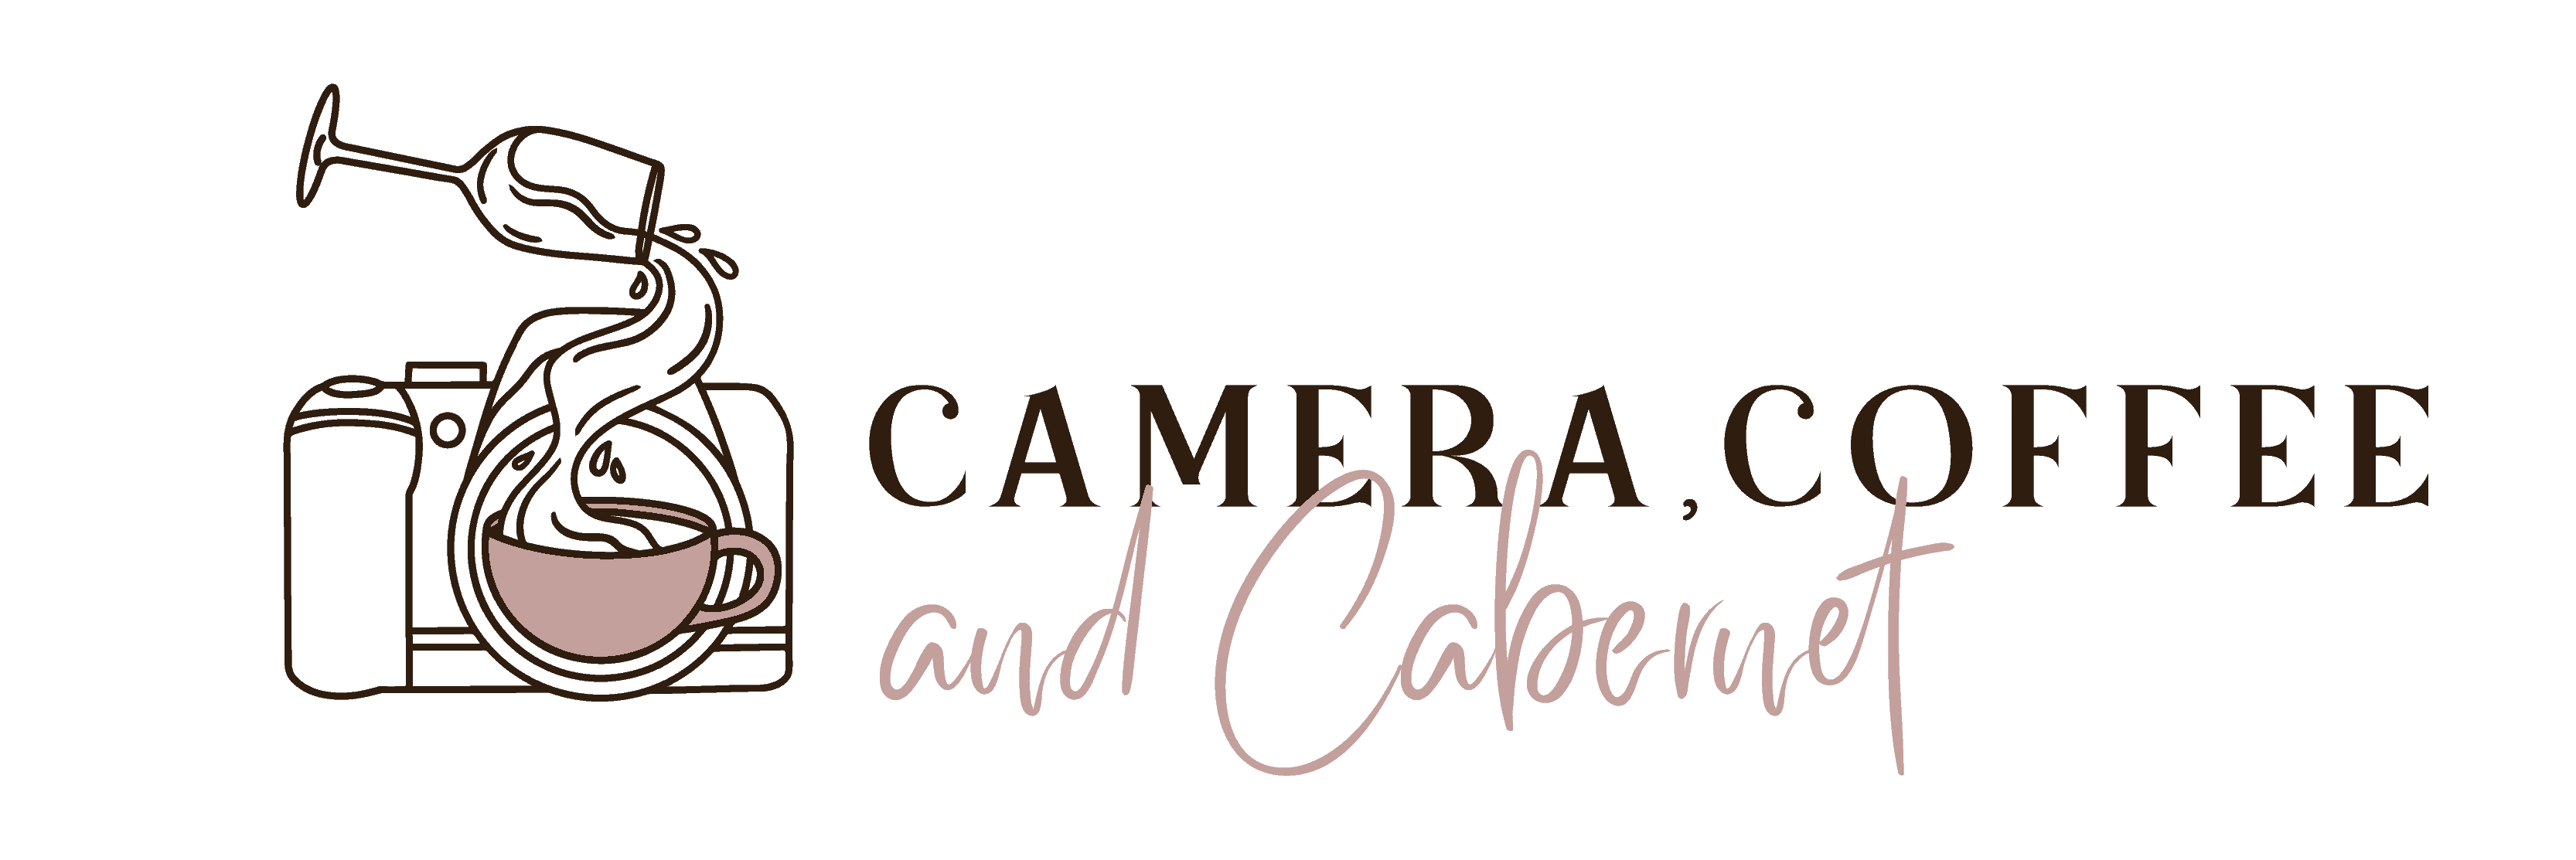 Camera coffee and cabaret logo.